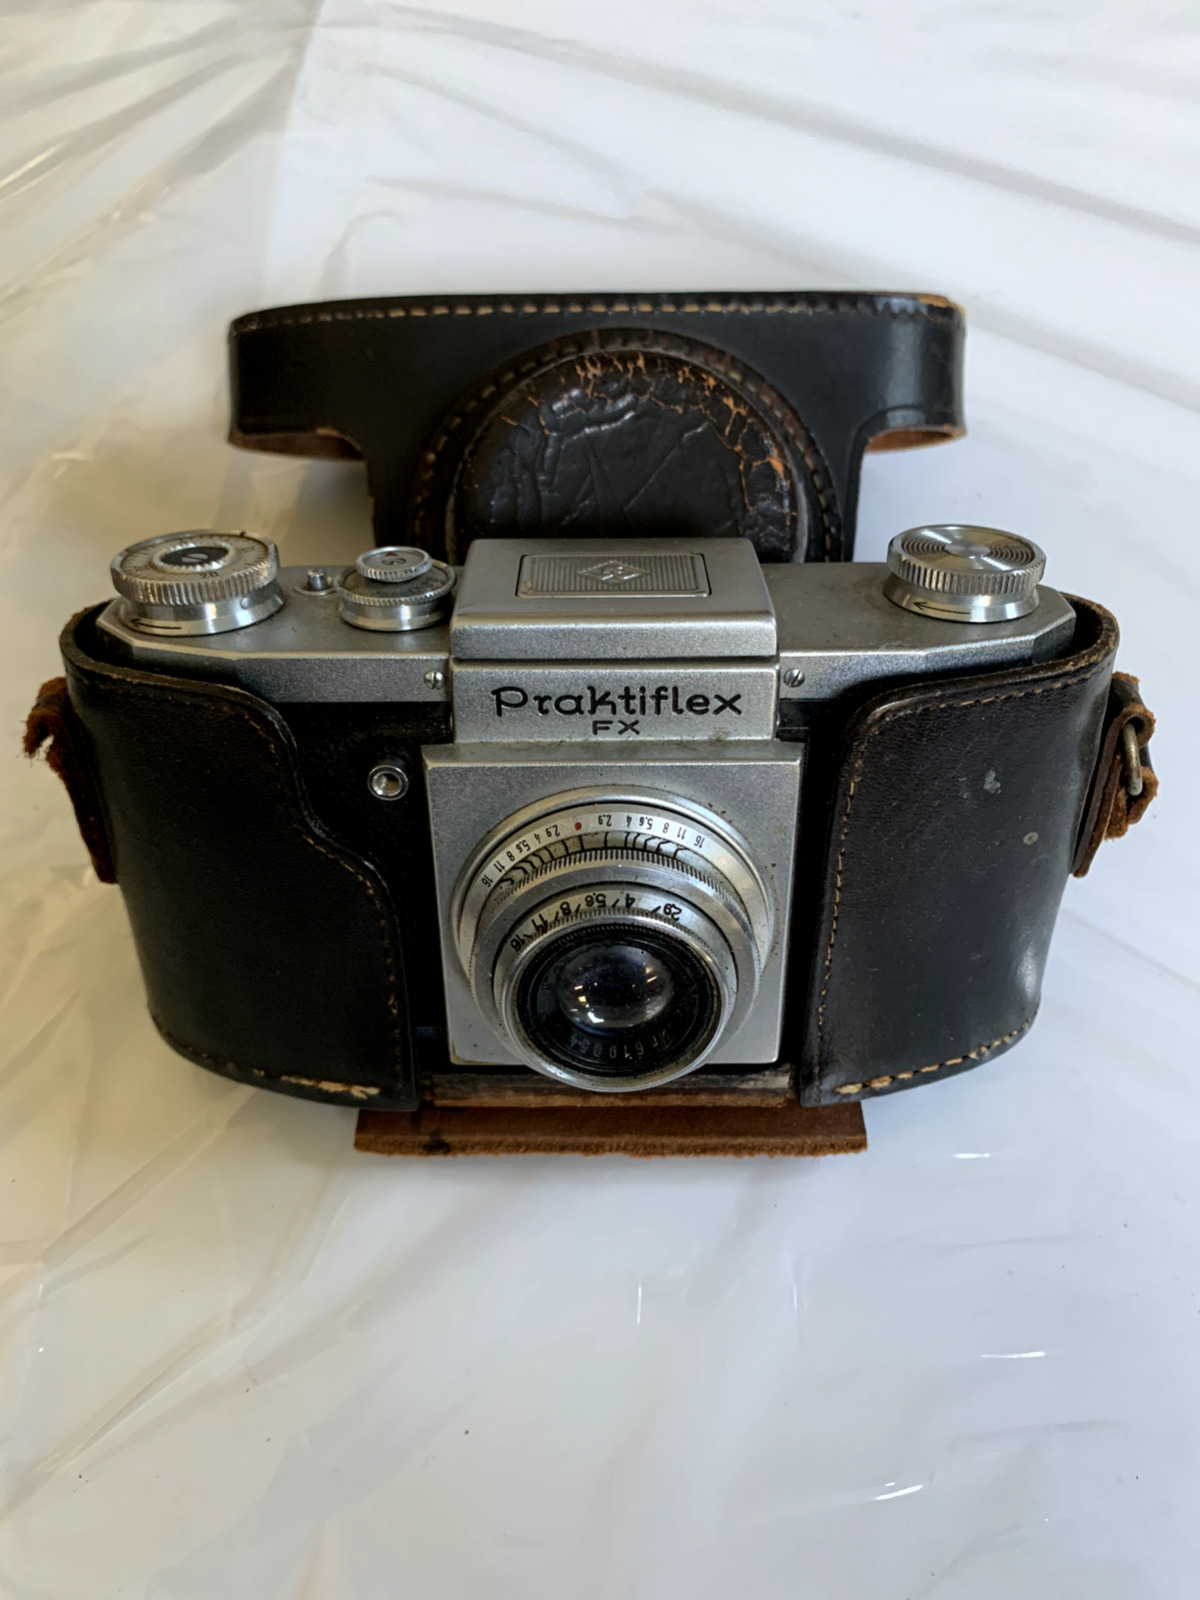 Praktiflex FX 35mm SLR Film Camera German Westanar 1:2.8 50mm Lens Leather Cases